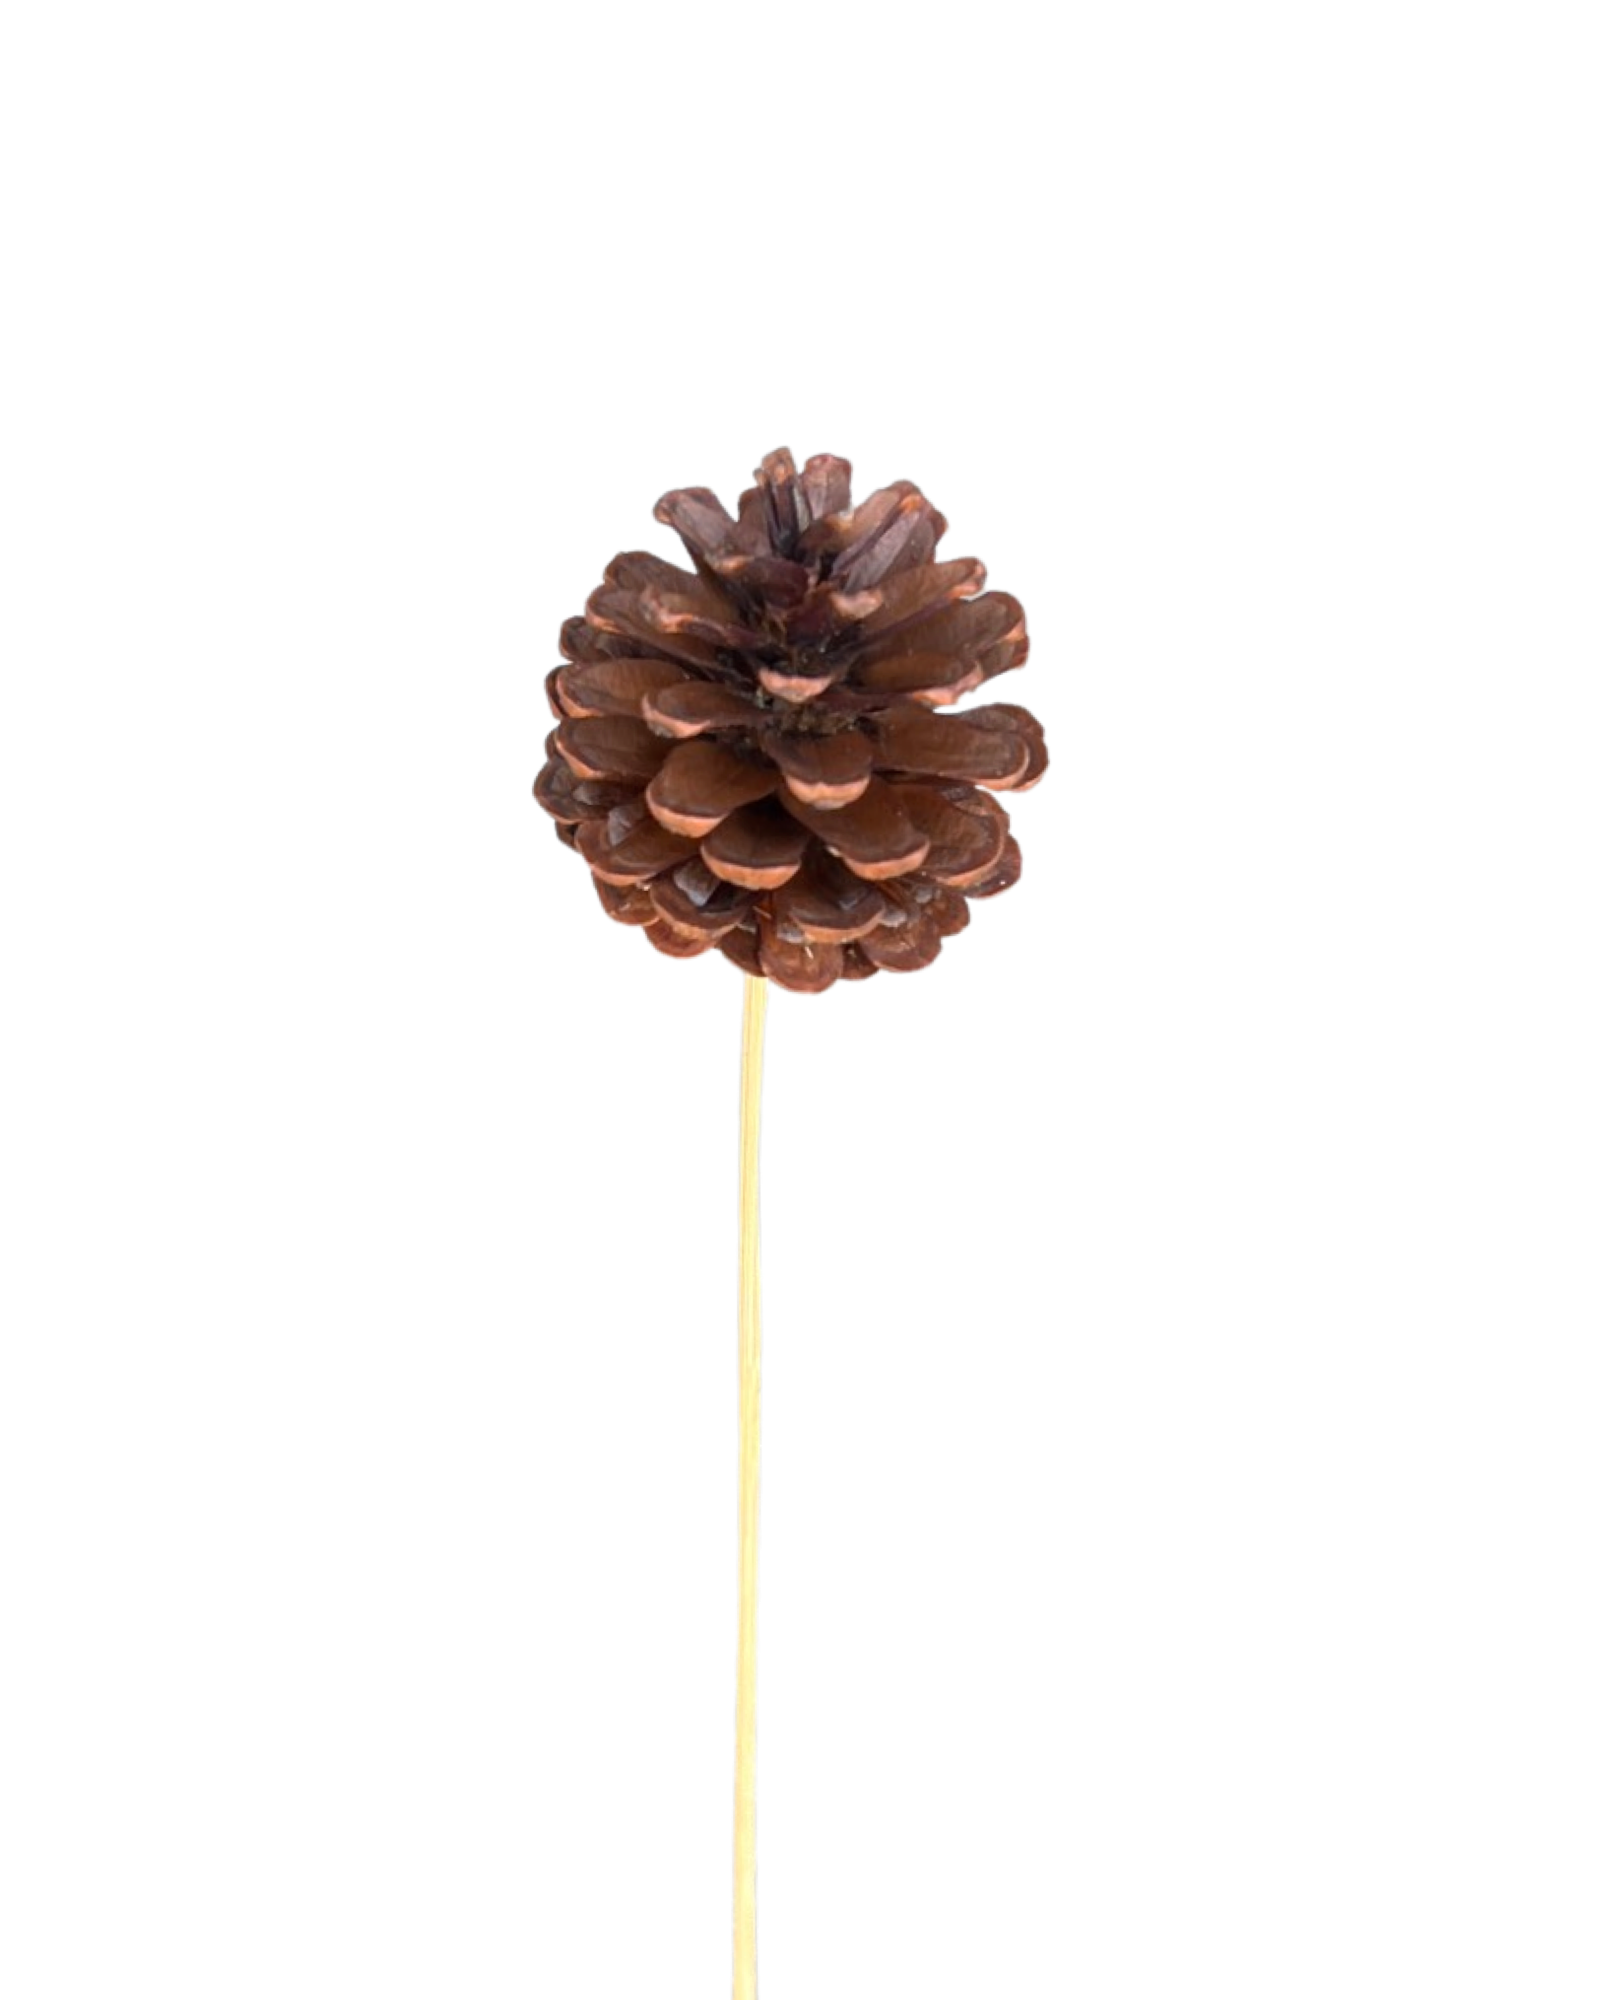 Pine cones(CONIFER CONES) - Natural